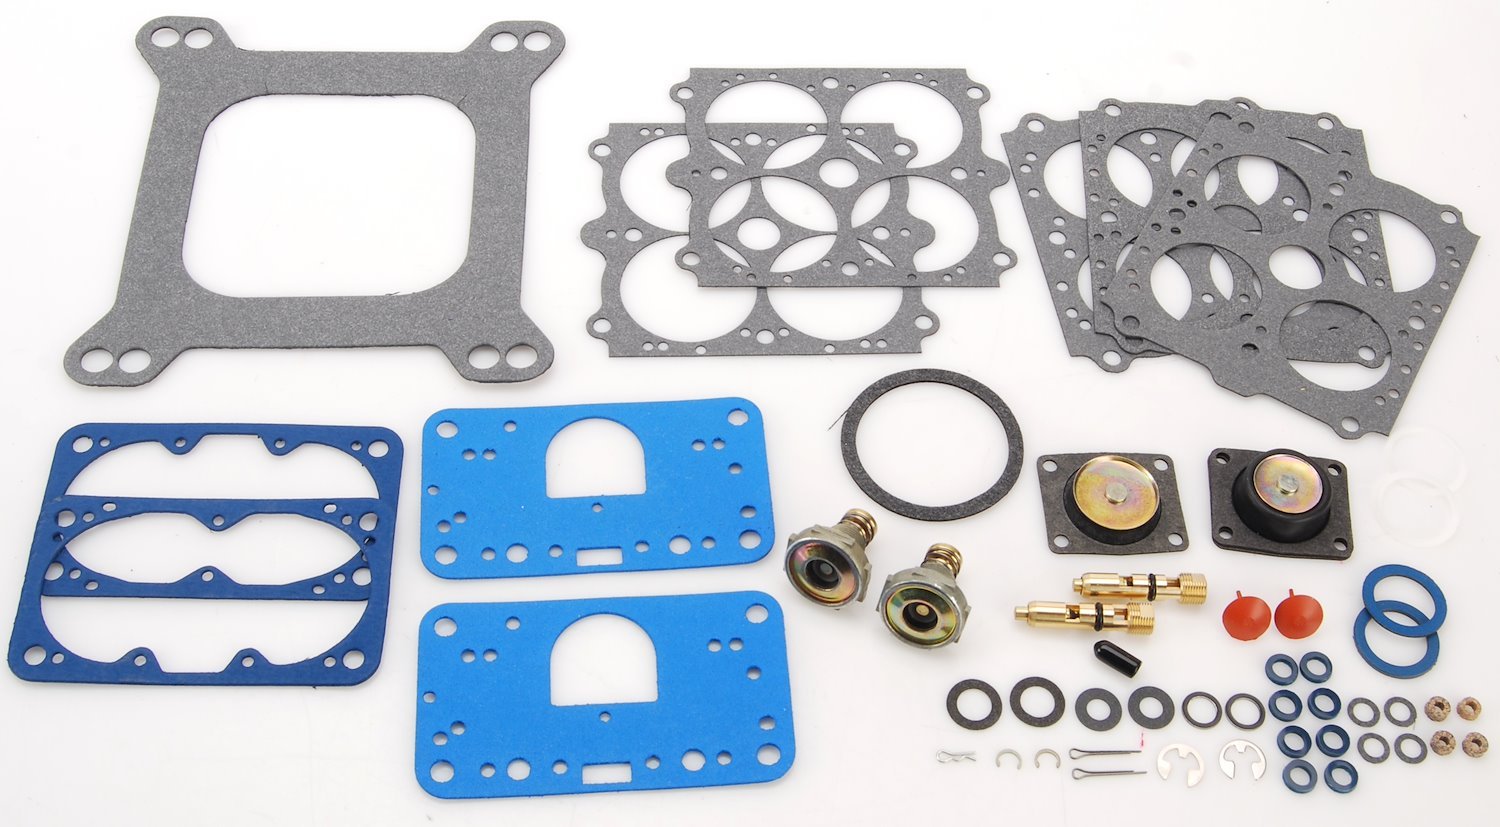 Carburetor Rebuild Kit For Holley 4150 Models